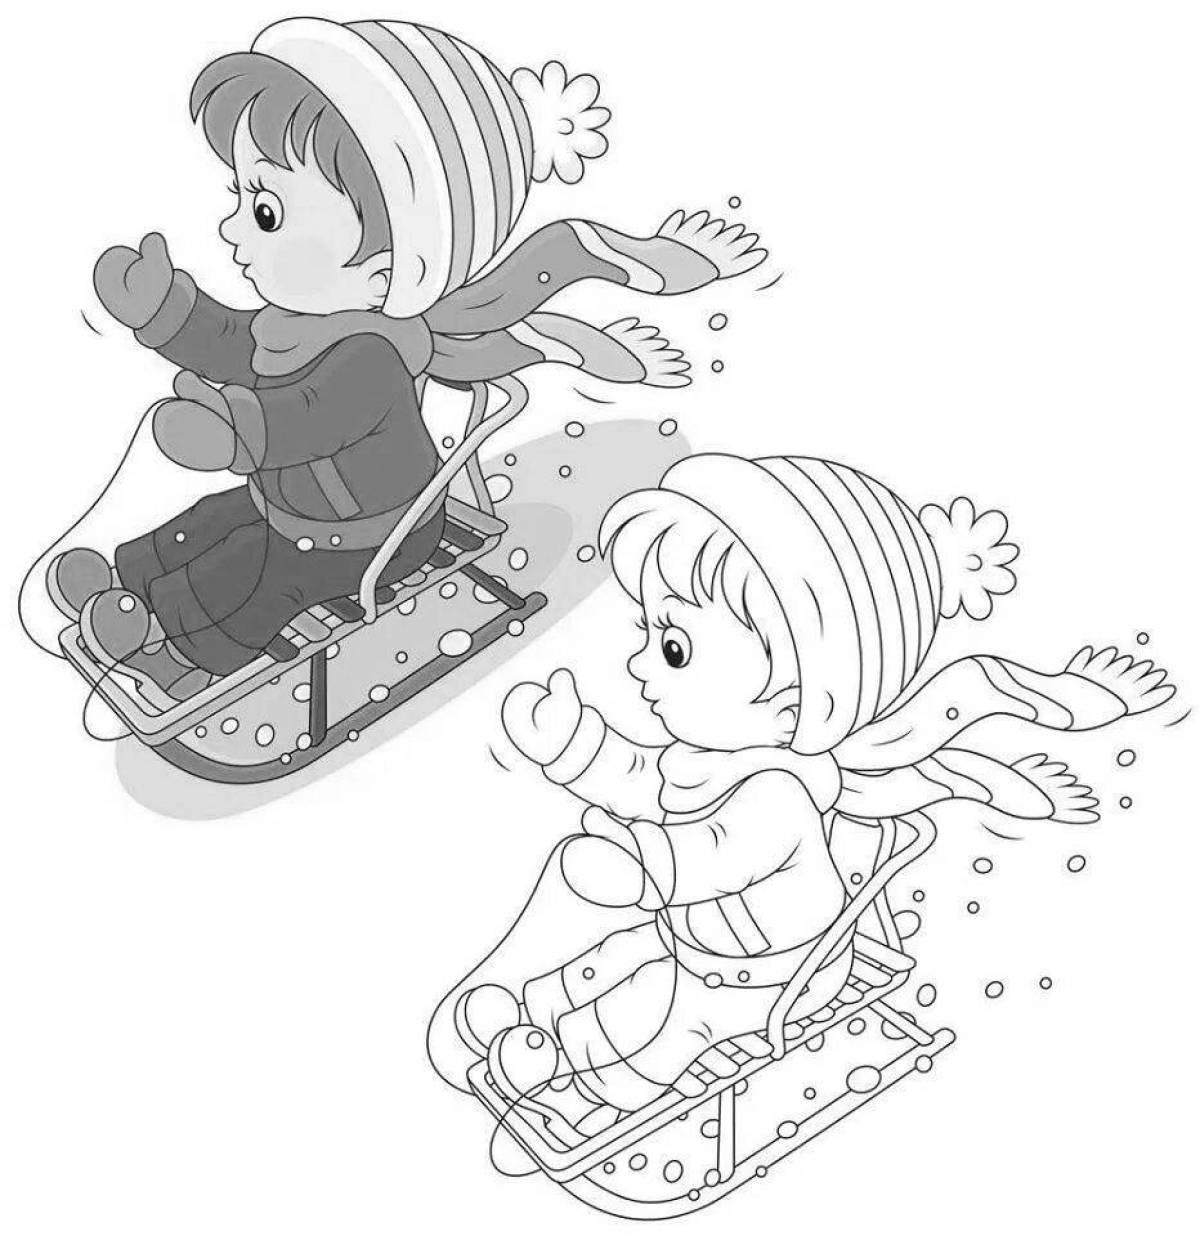 Оживленные дети катаются на санках с холма